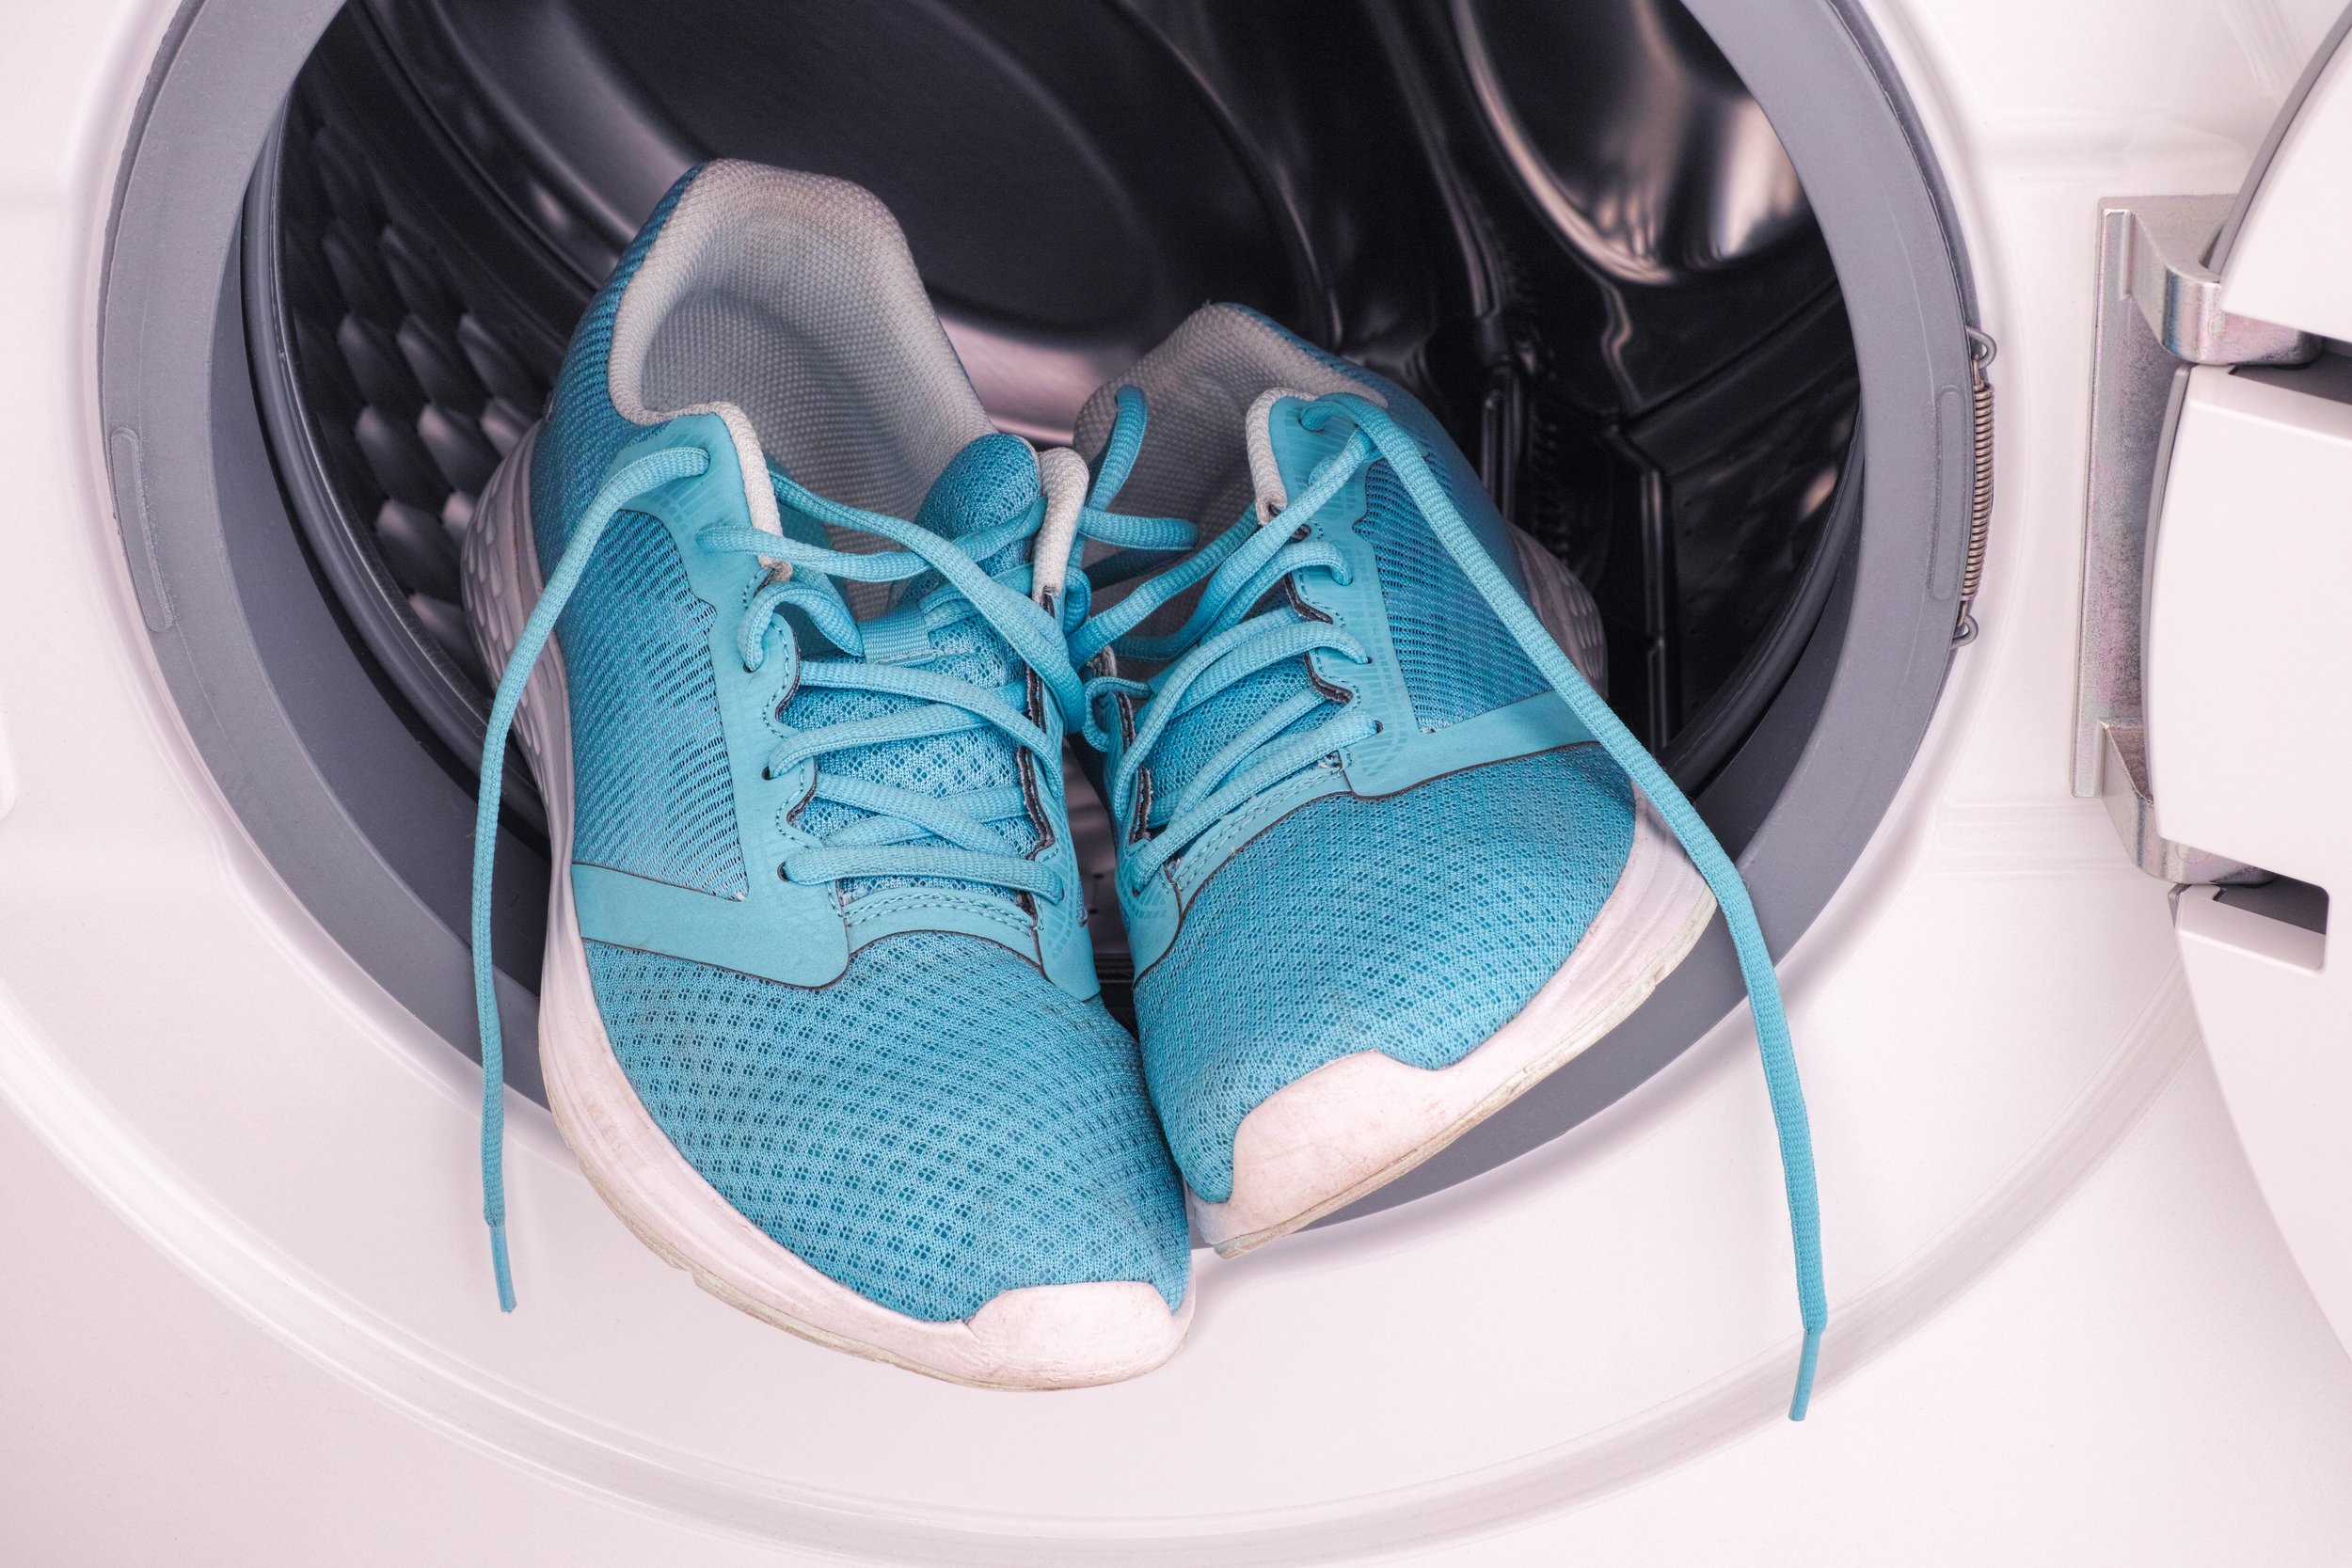 Ли постирать кроссовки в стиральной машине